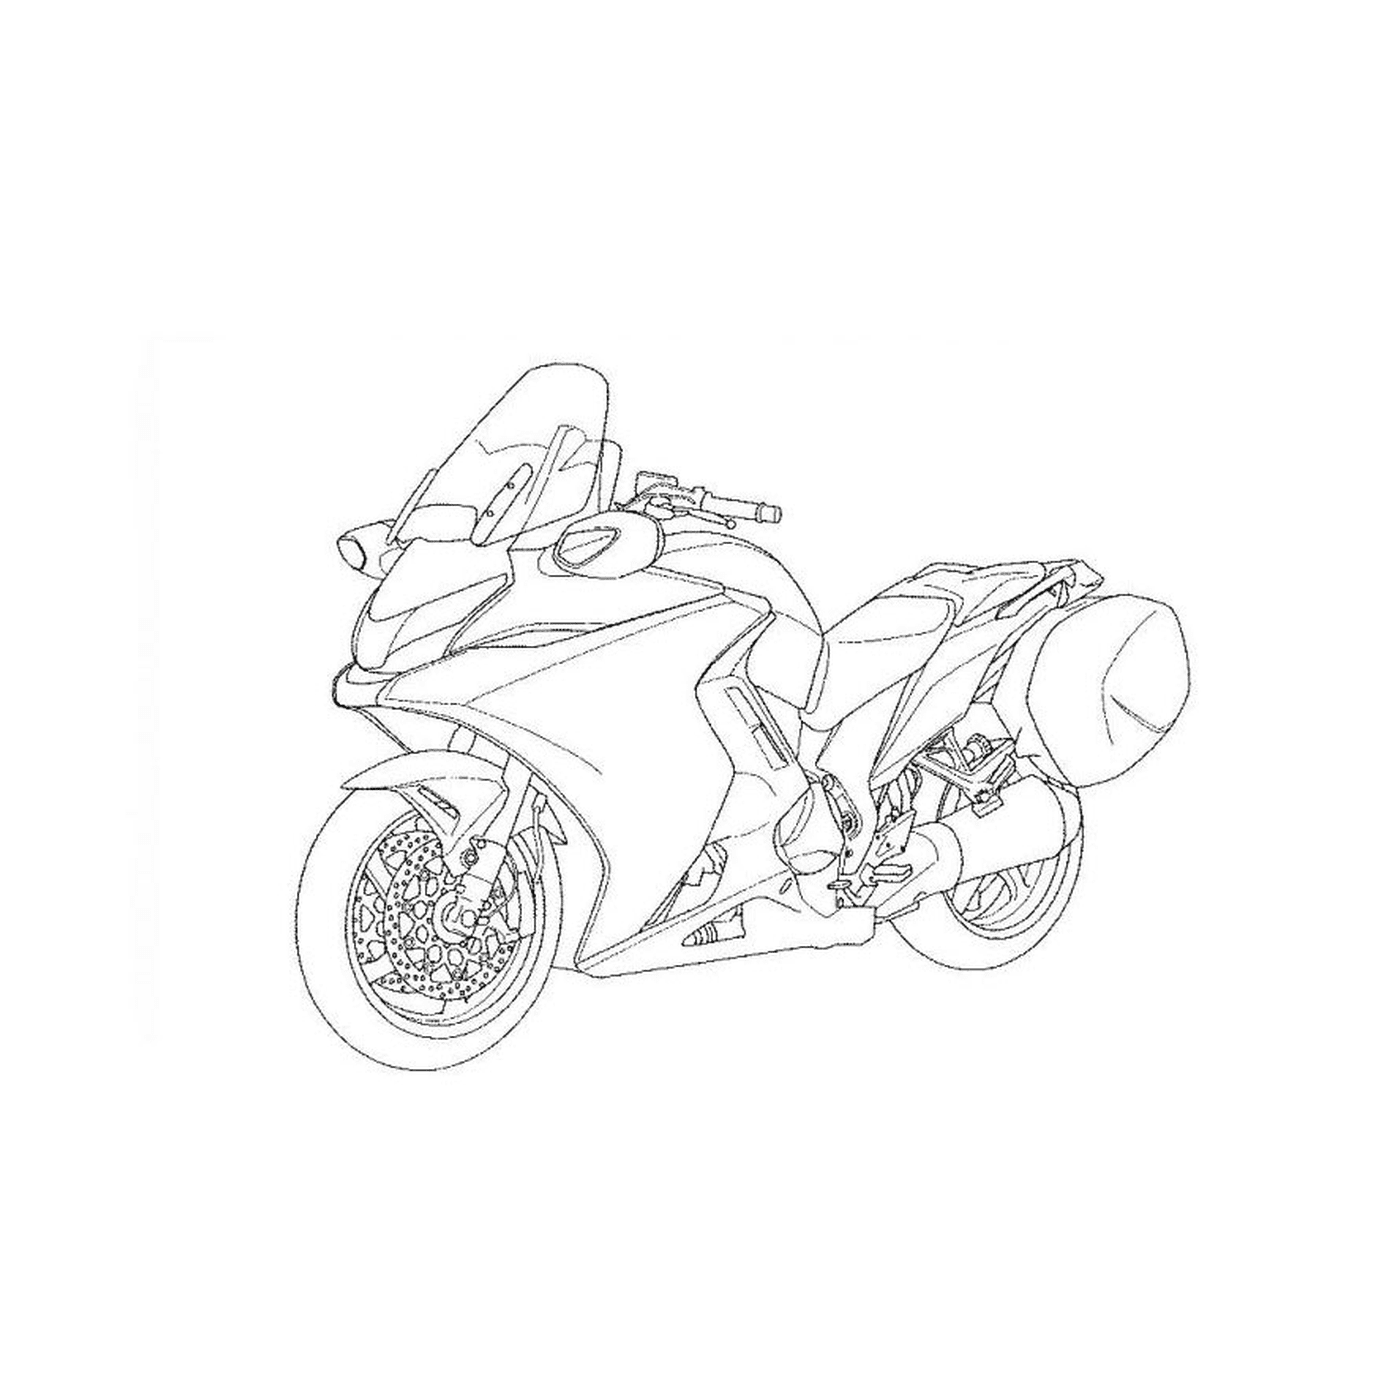   moto personnalisée sur fond blanc 